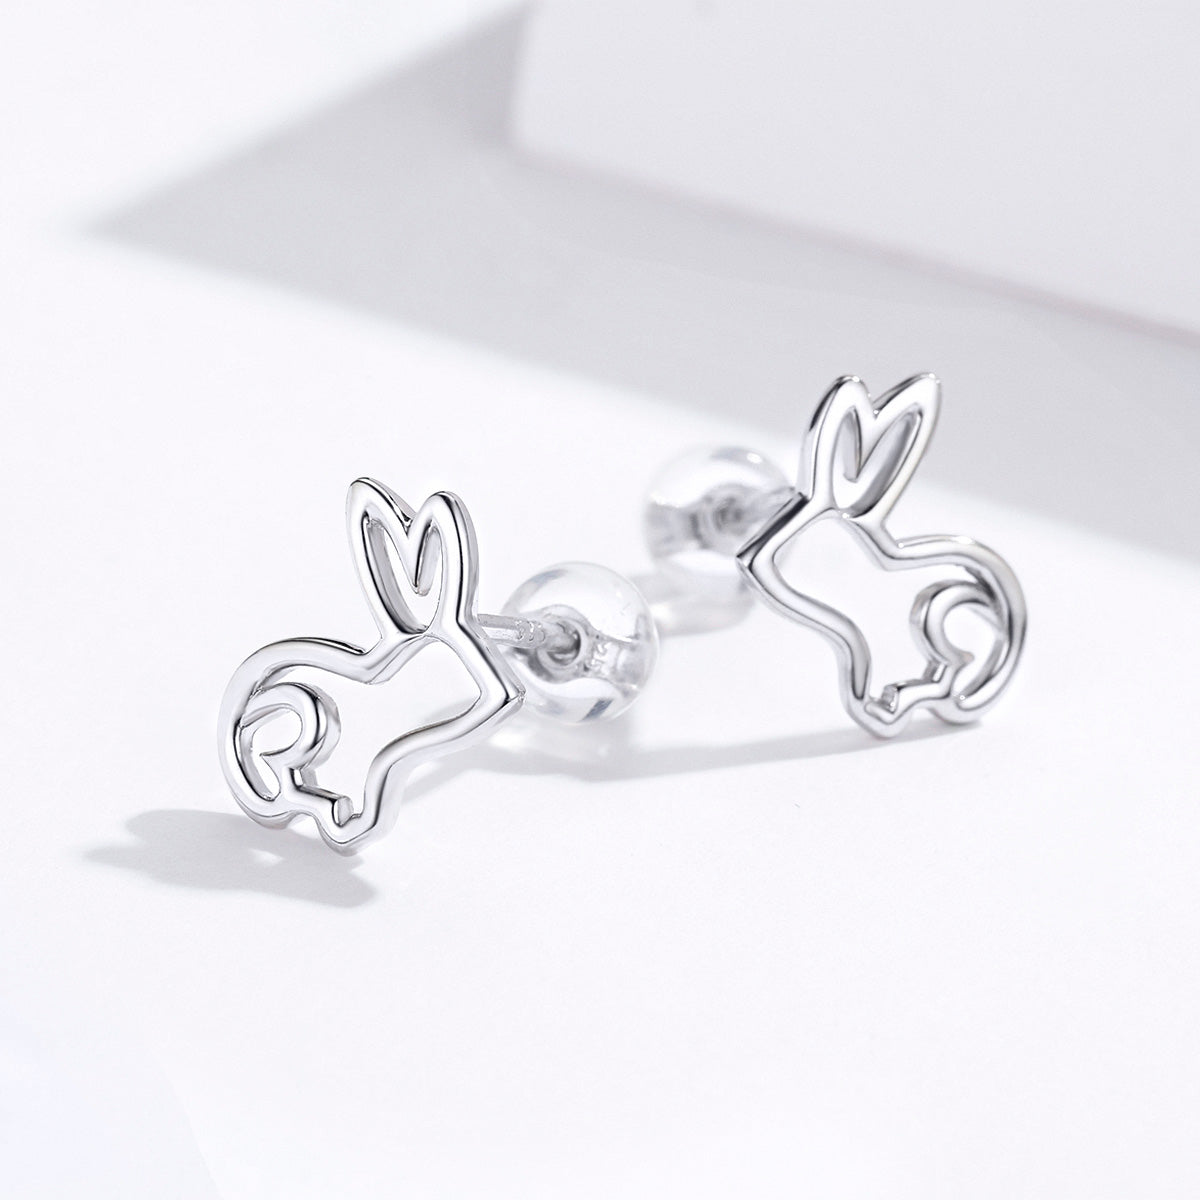 Bunny earrings,  92.5% Sterling Silver,  Pierced rabbit ear stud